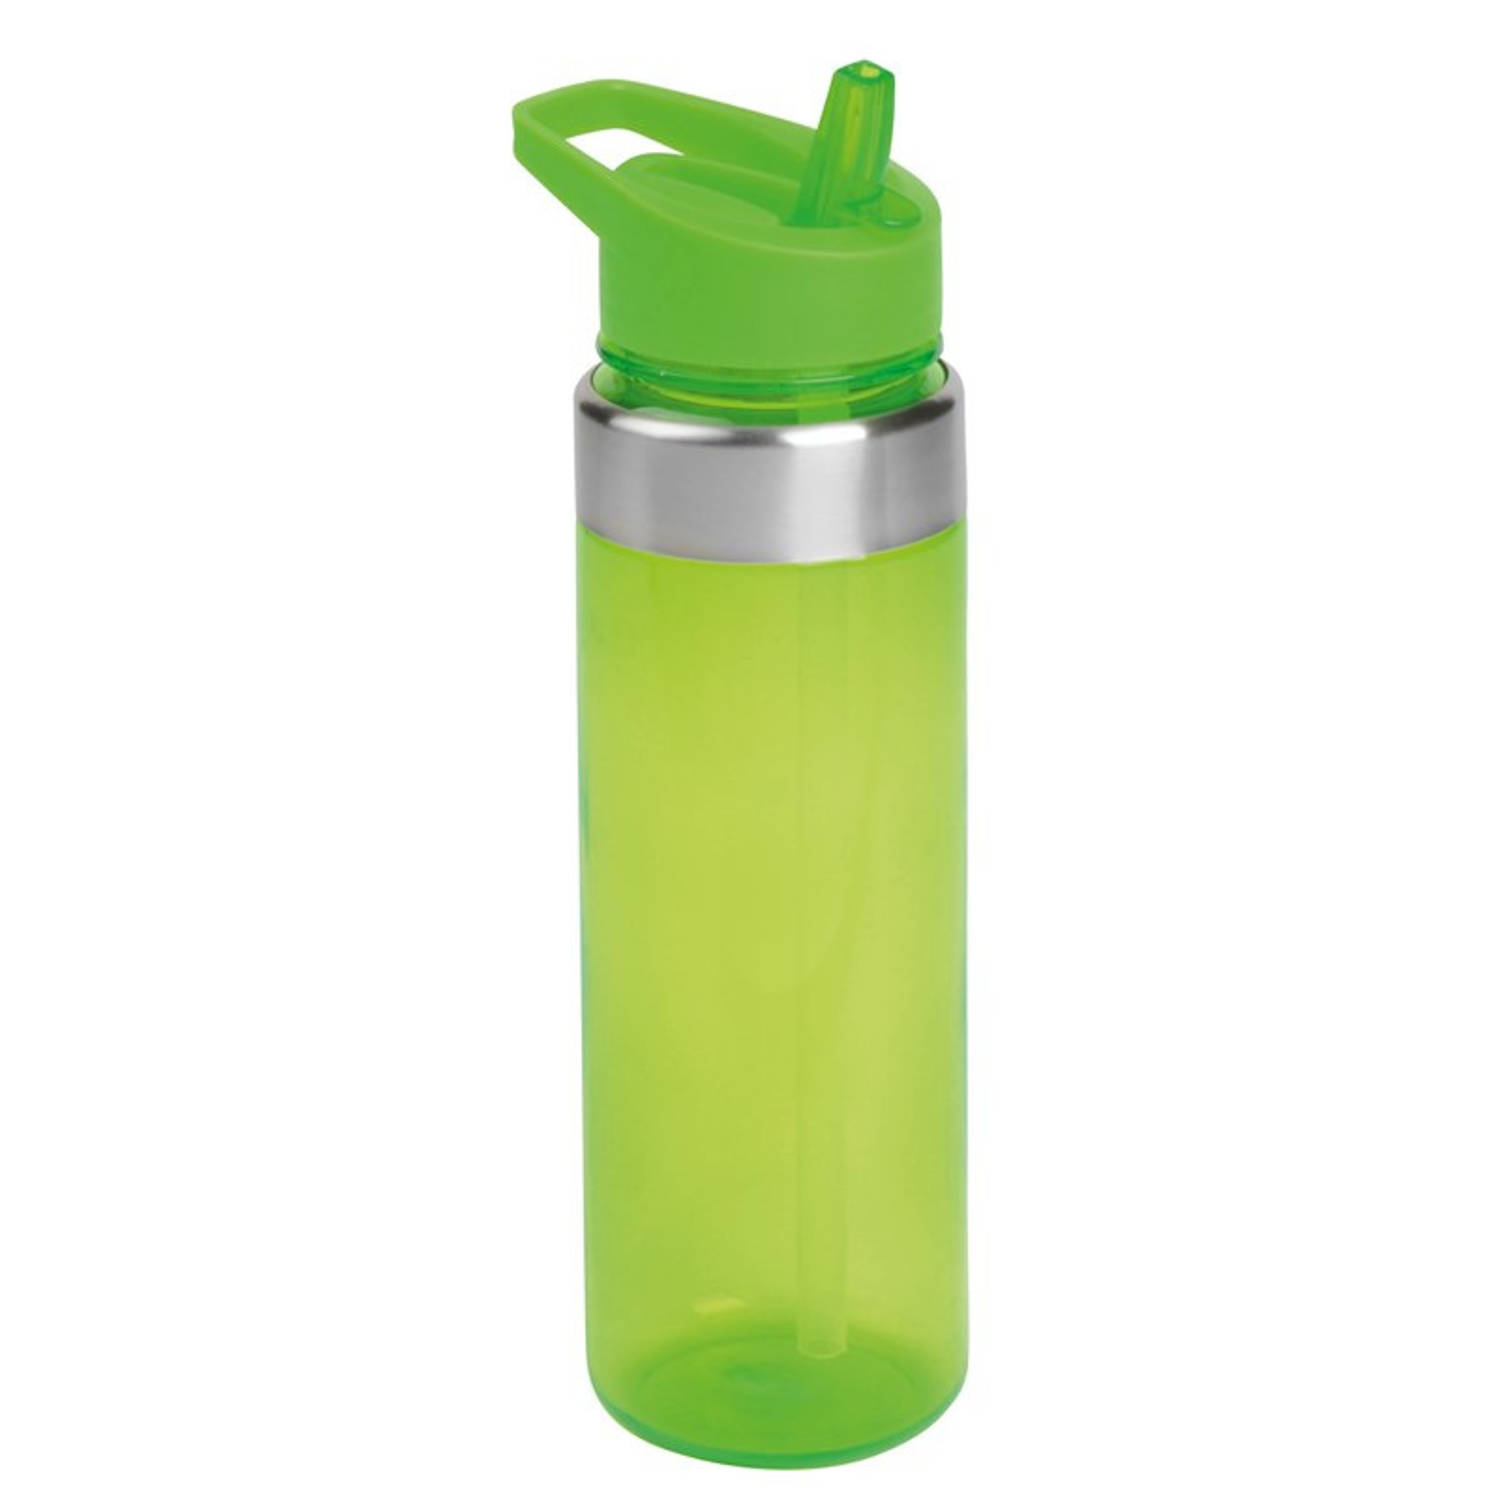 Drinkfles/waterfles transparant/groen met draaglus 650 ml - Drinkflessen